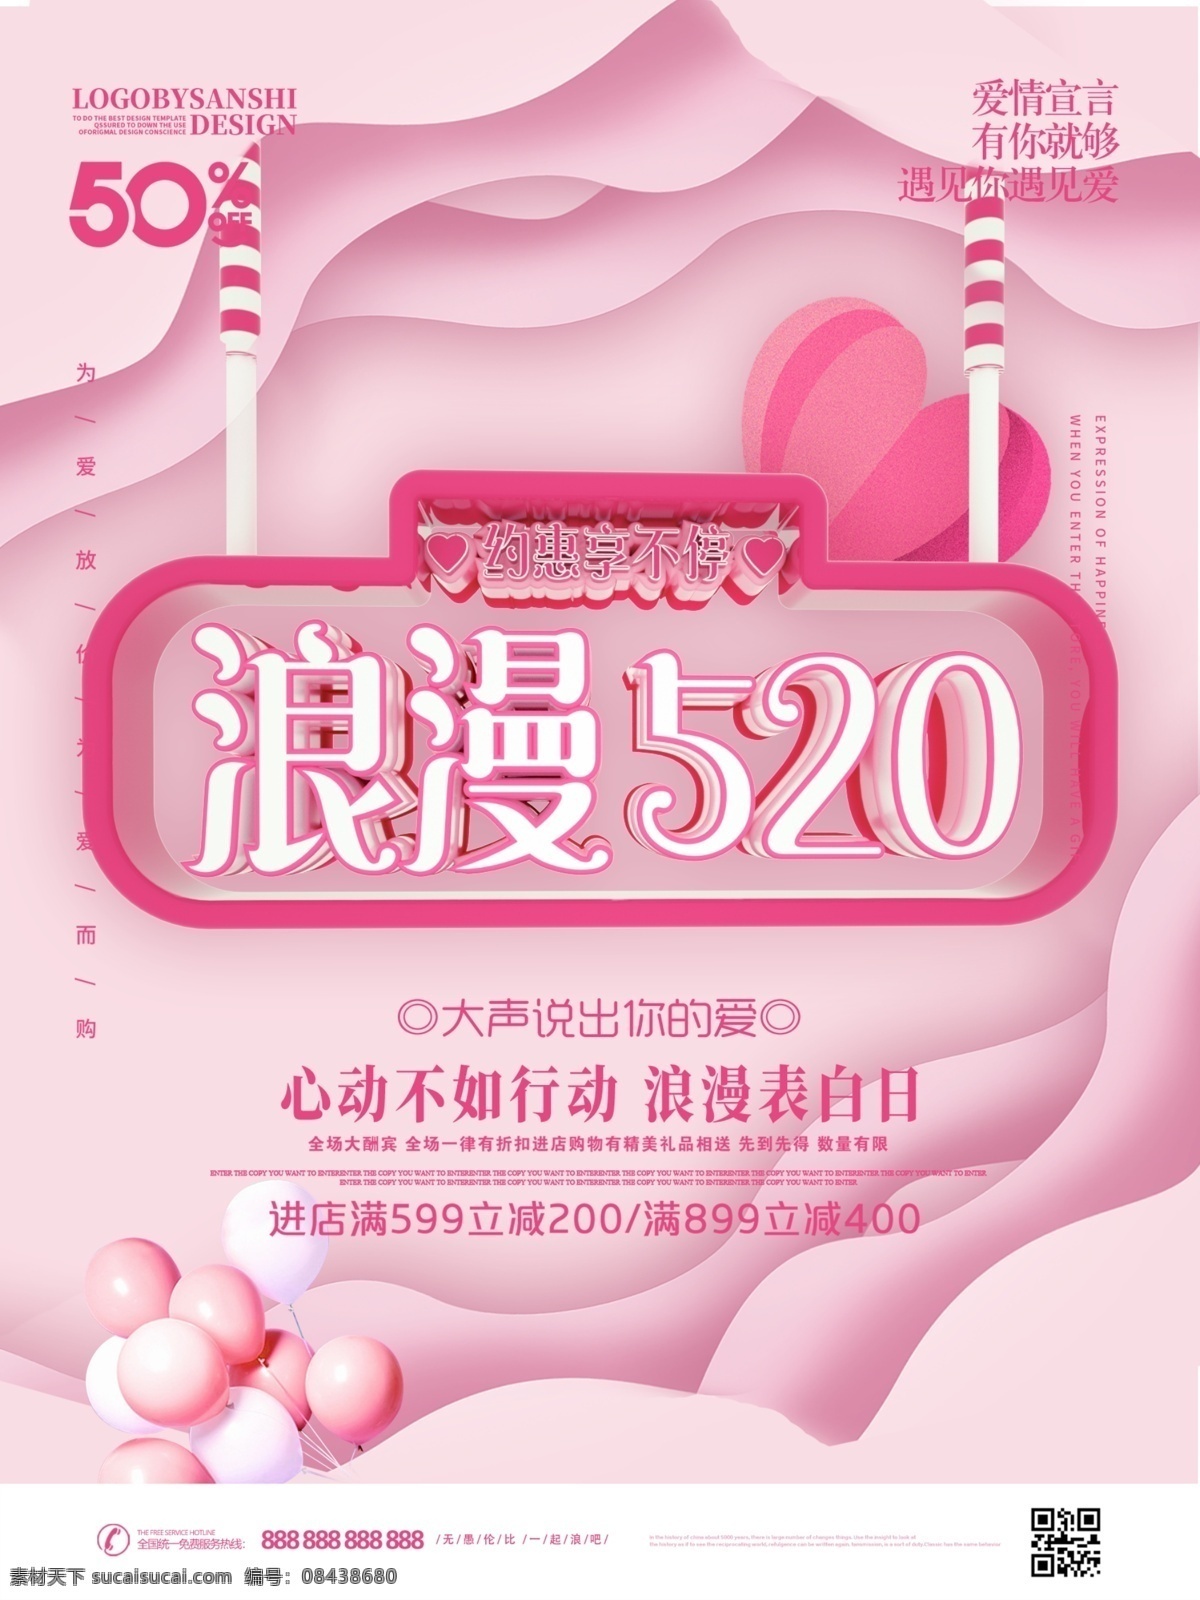 c4d 创意 字体 浪漫 520 促销 海报 剪纸风 粉色